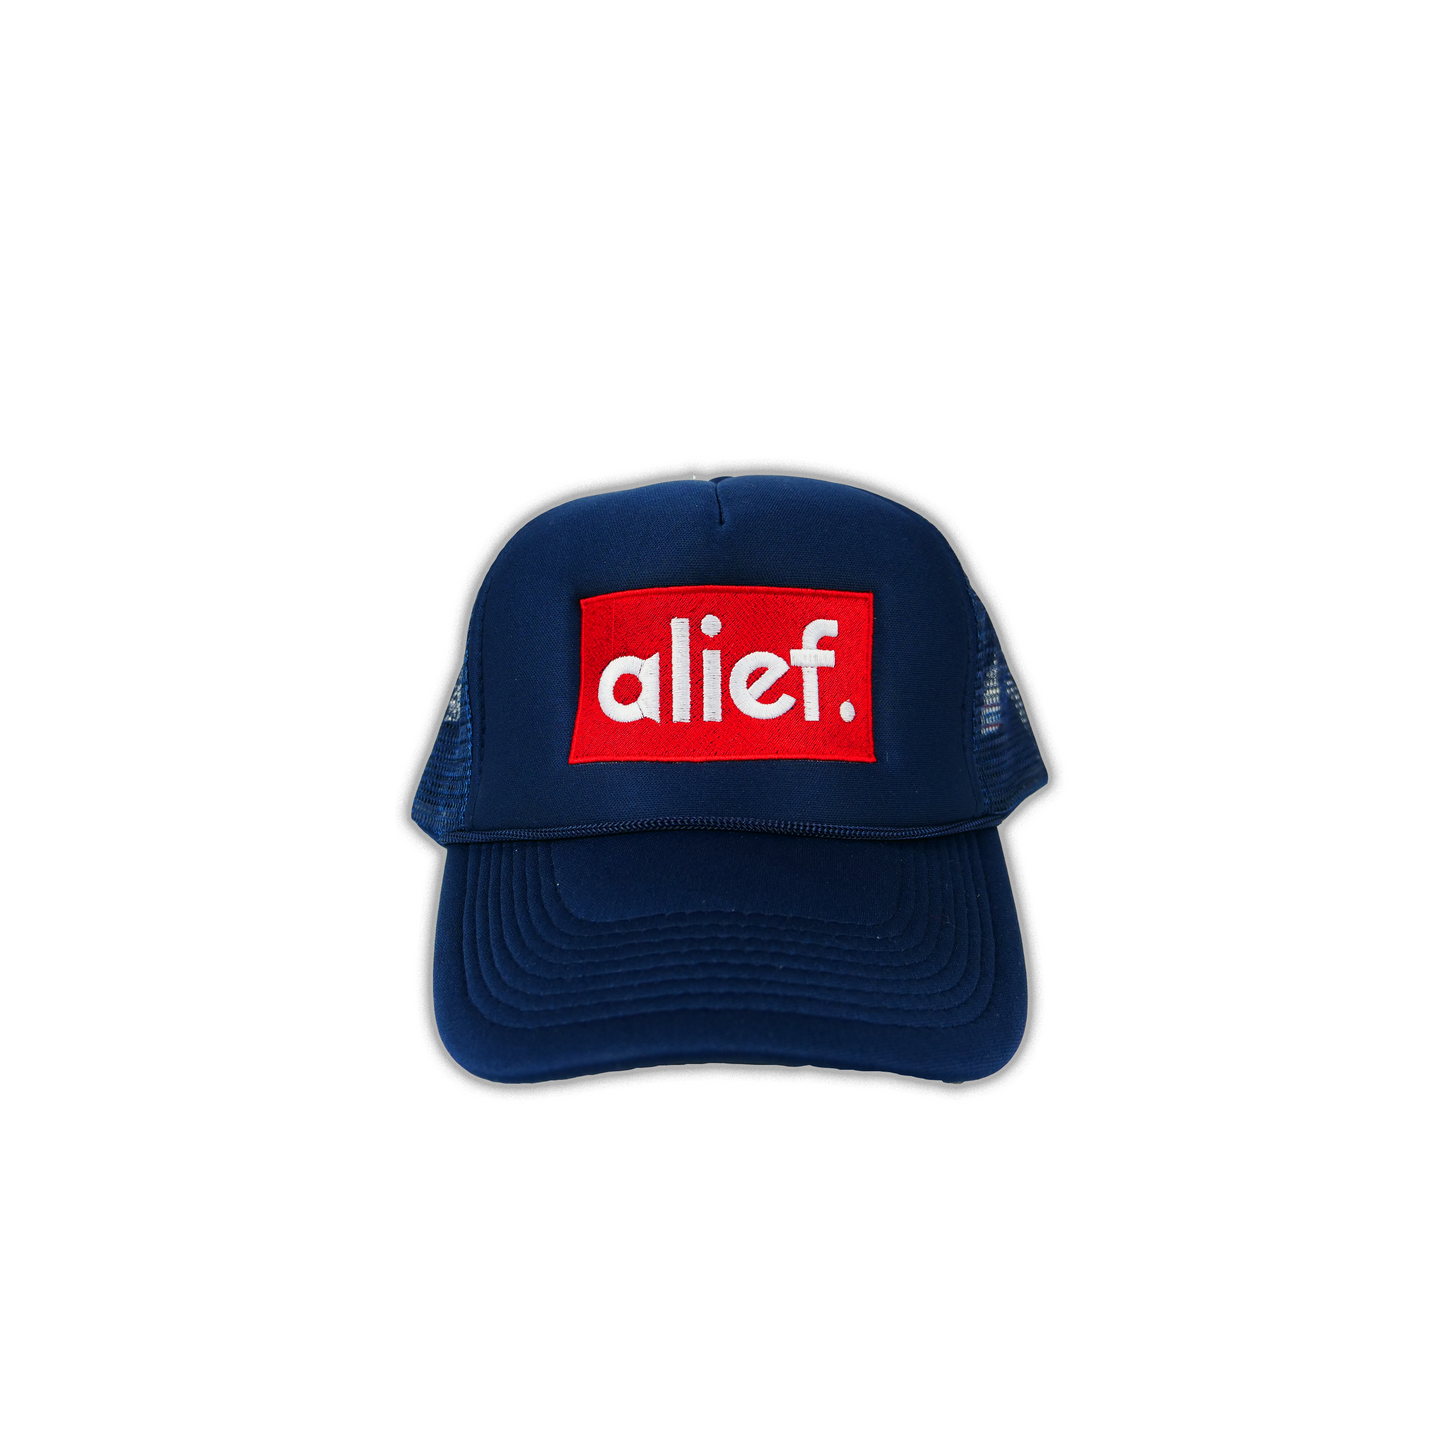 Alief Red Box Trucker Hat - Navy Blue